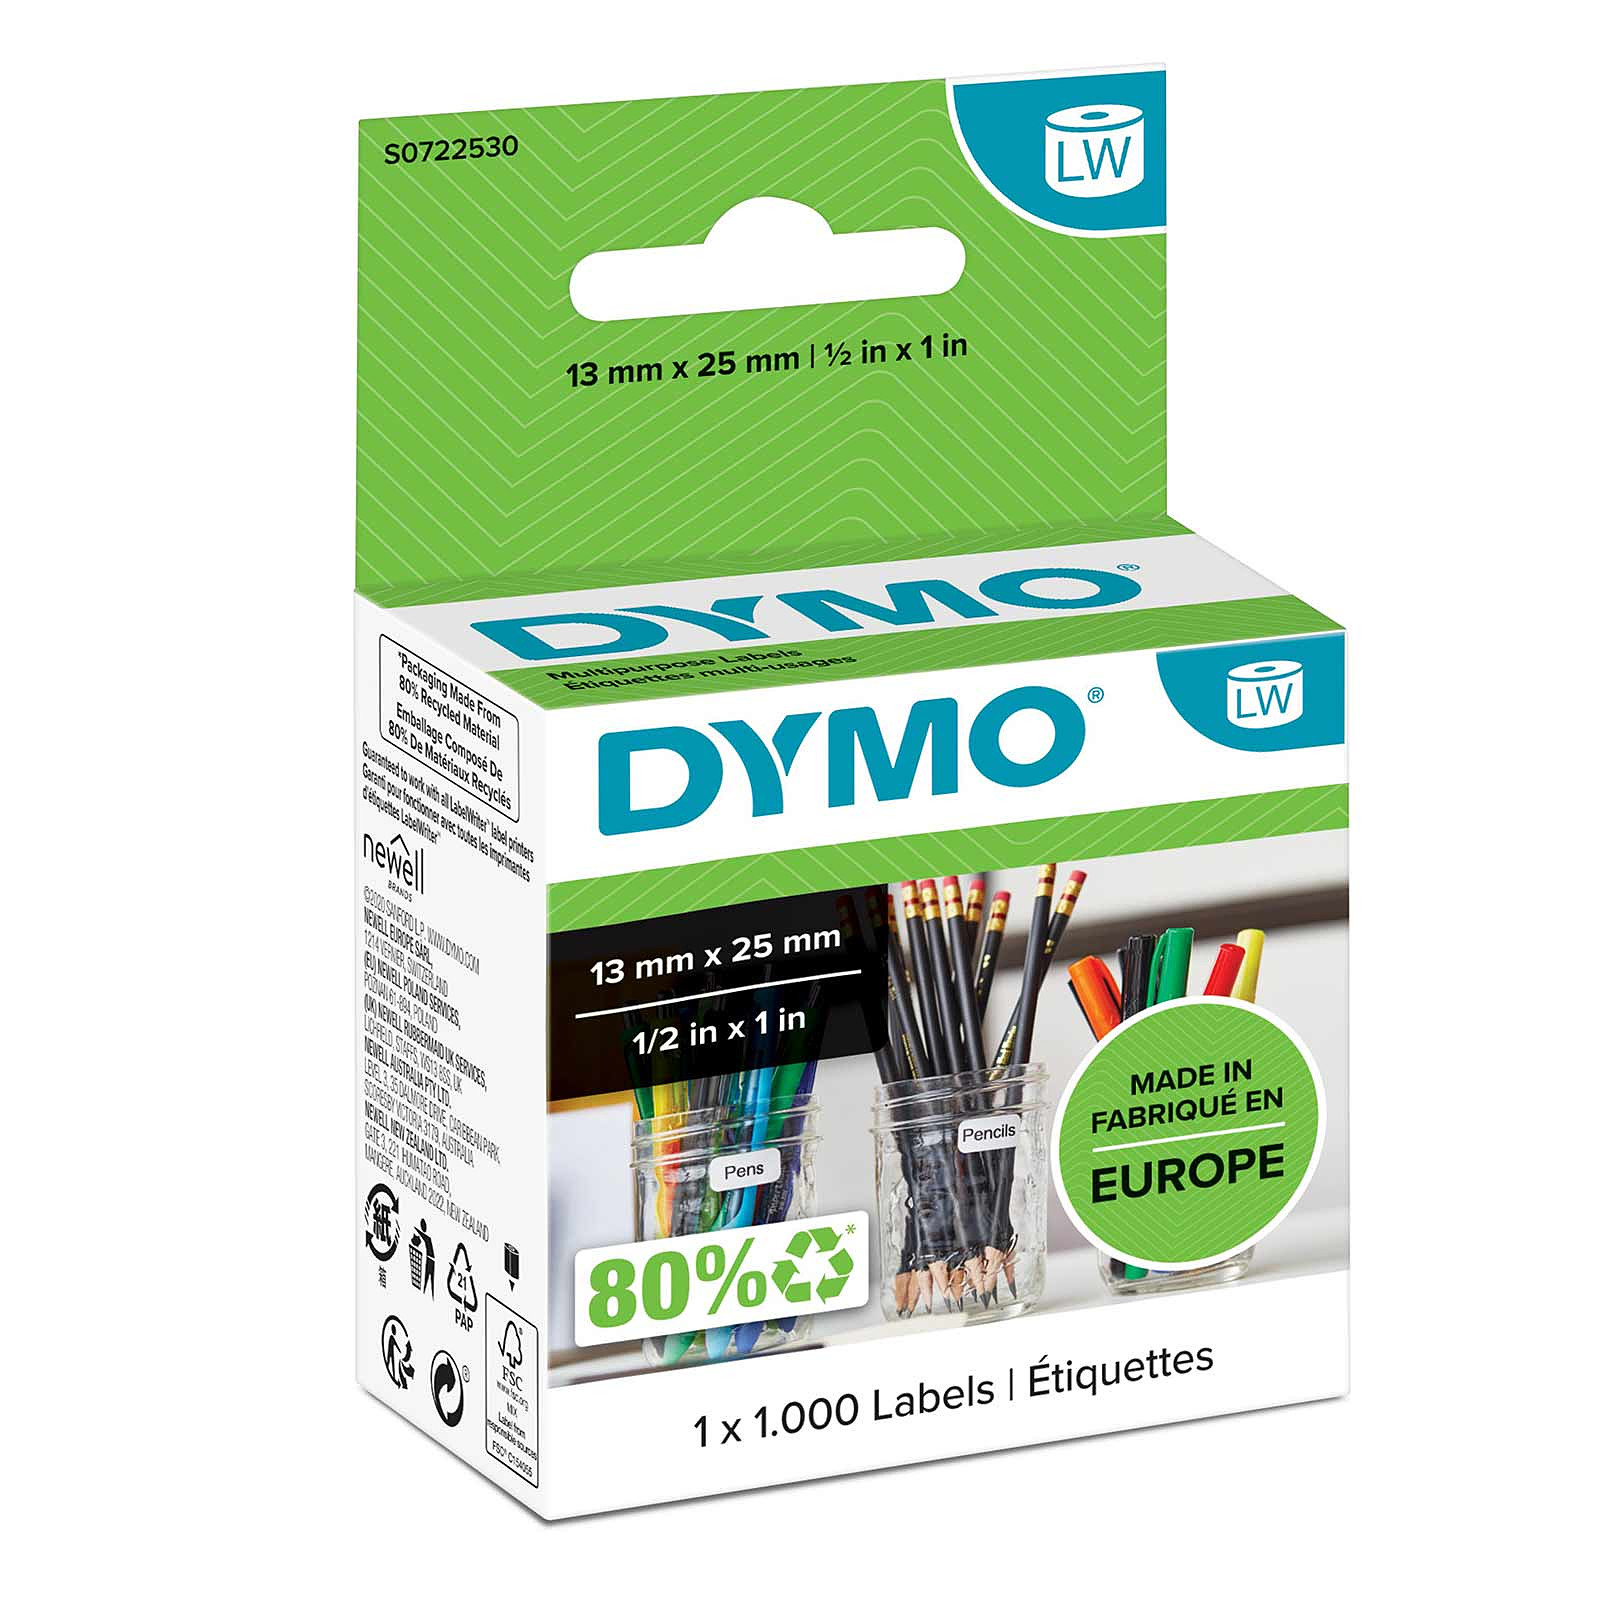 DYMO Etiquettes multi-usage 24 x 12 mm - Papier imprimante DYMO